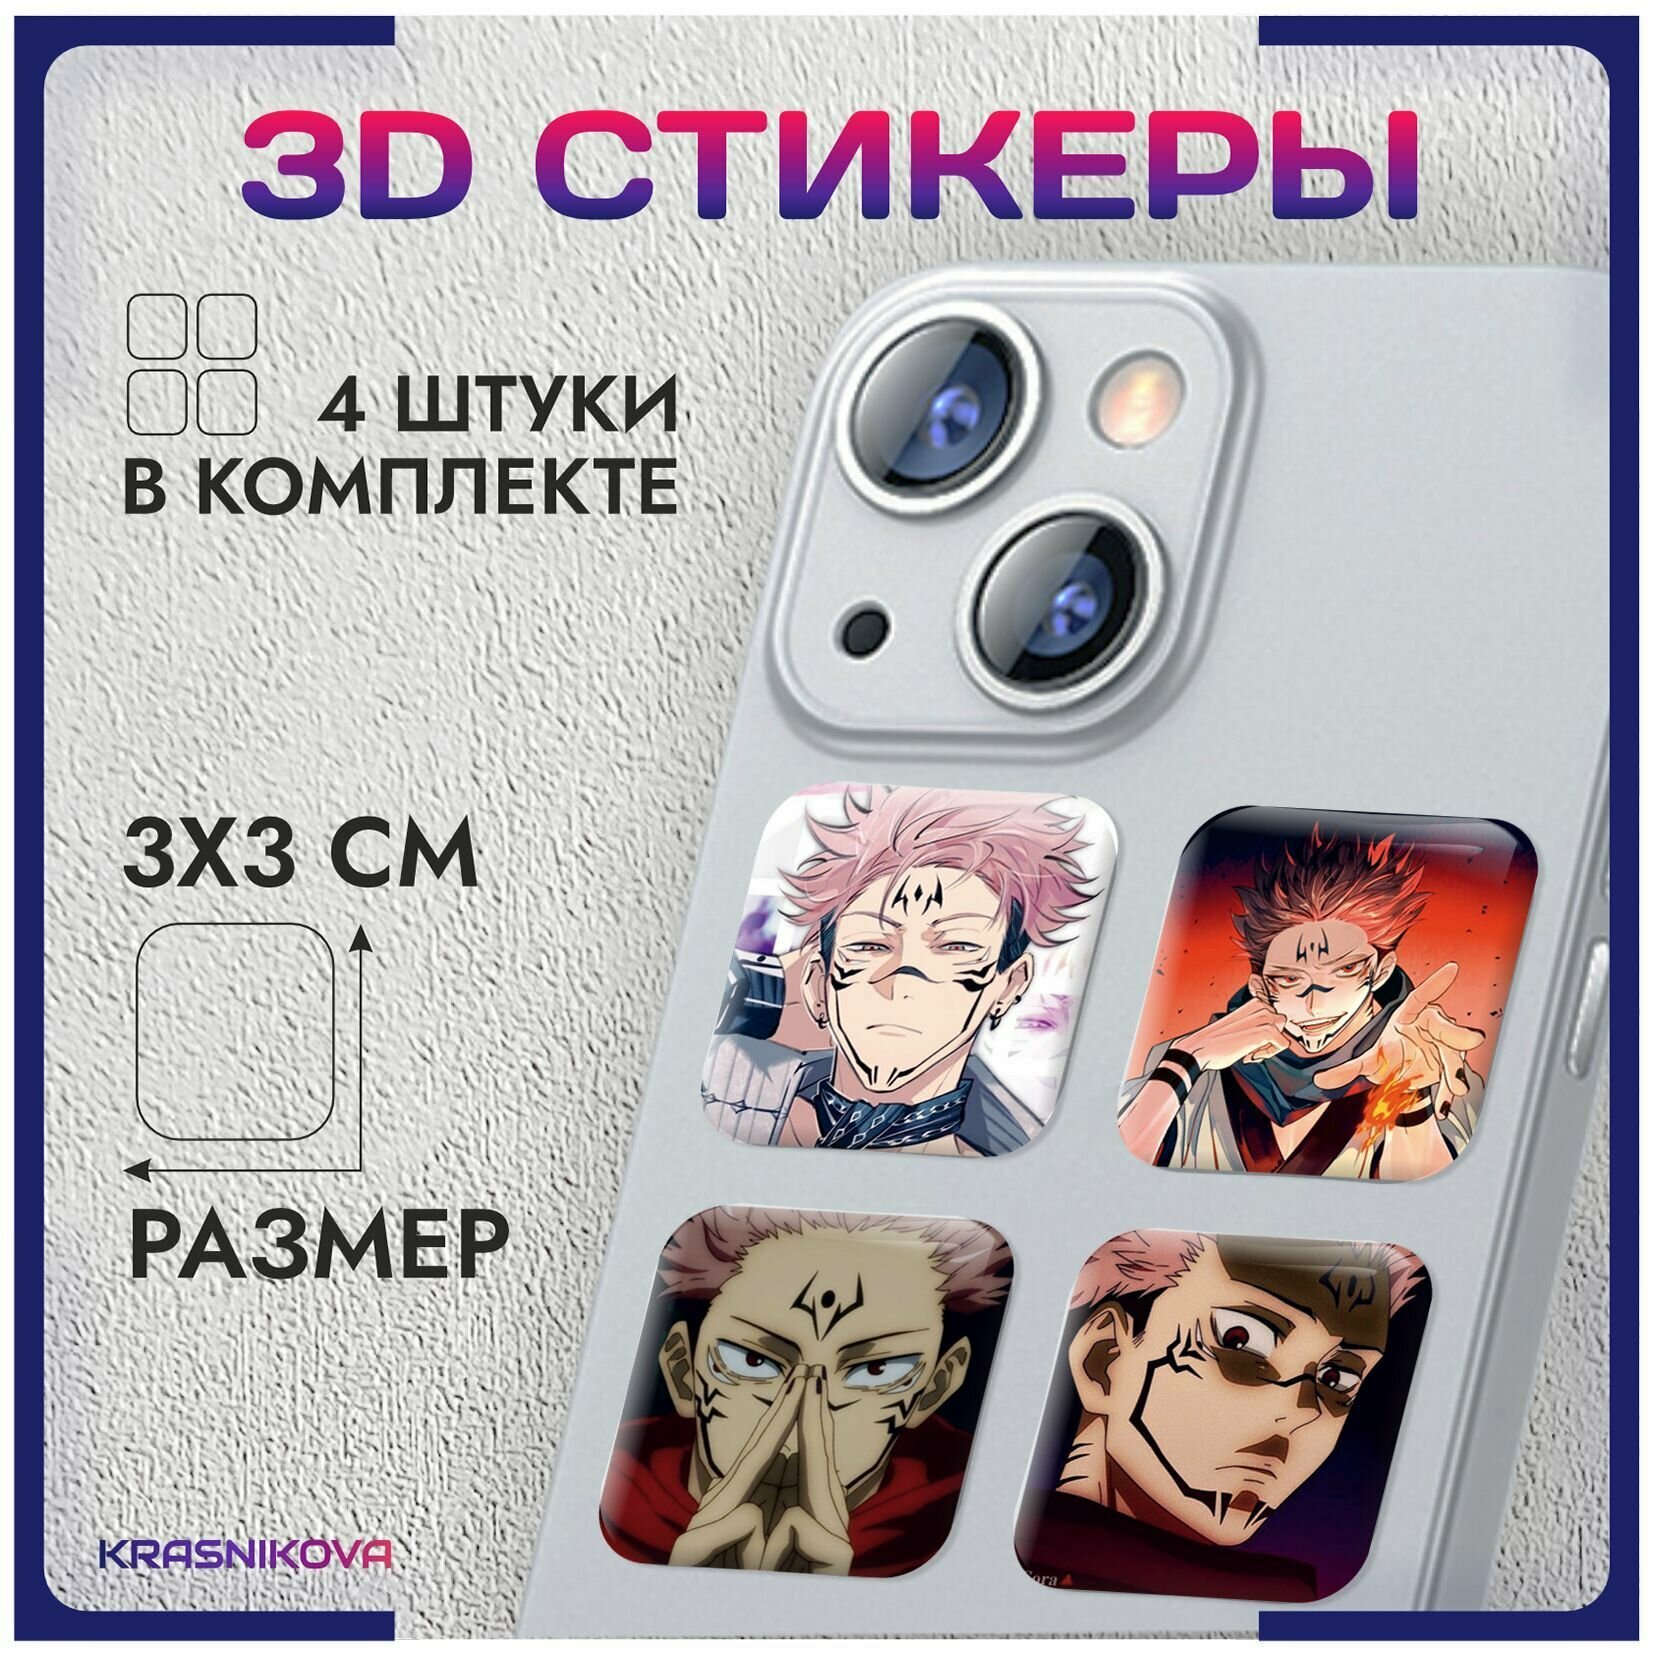 3D стикеры на телефон объемные наклейки Магическая битва v4